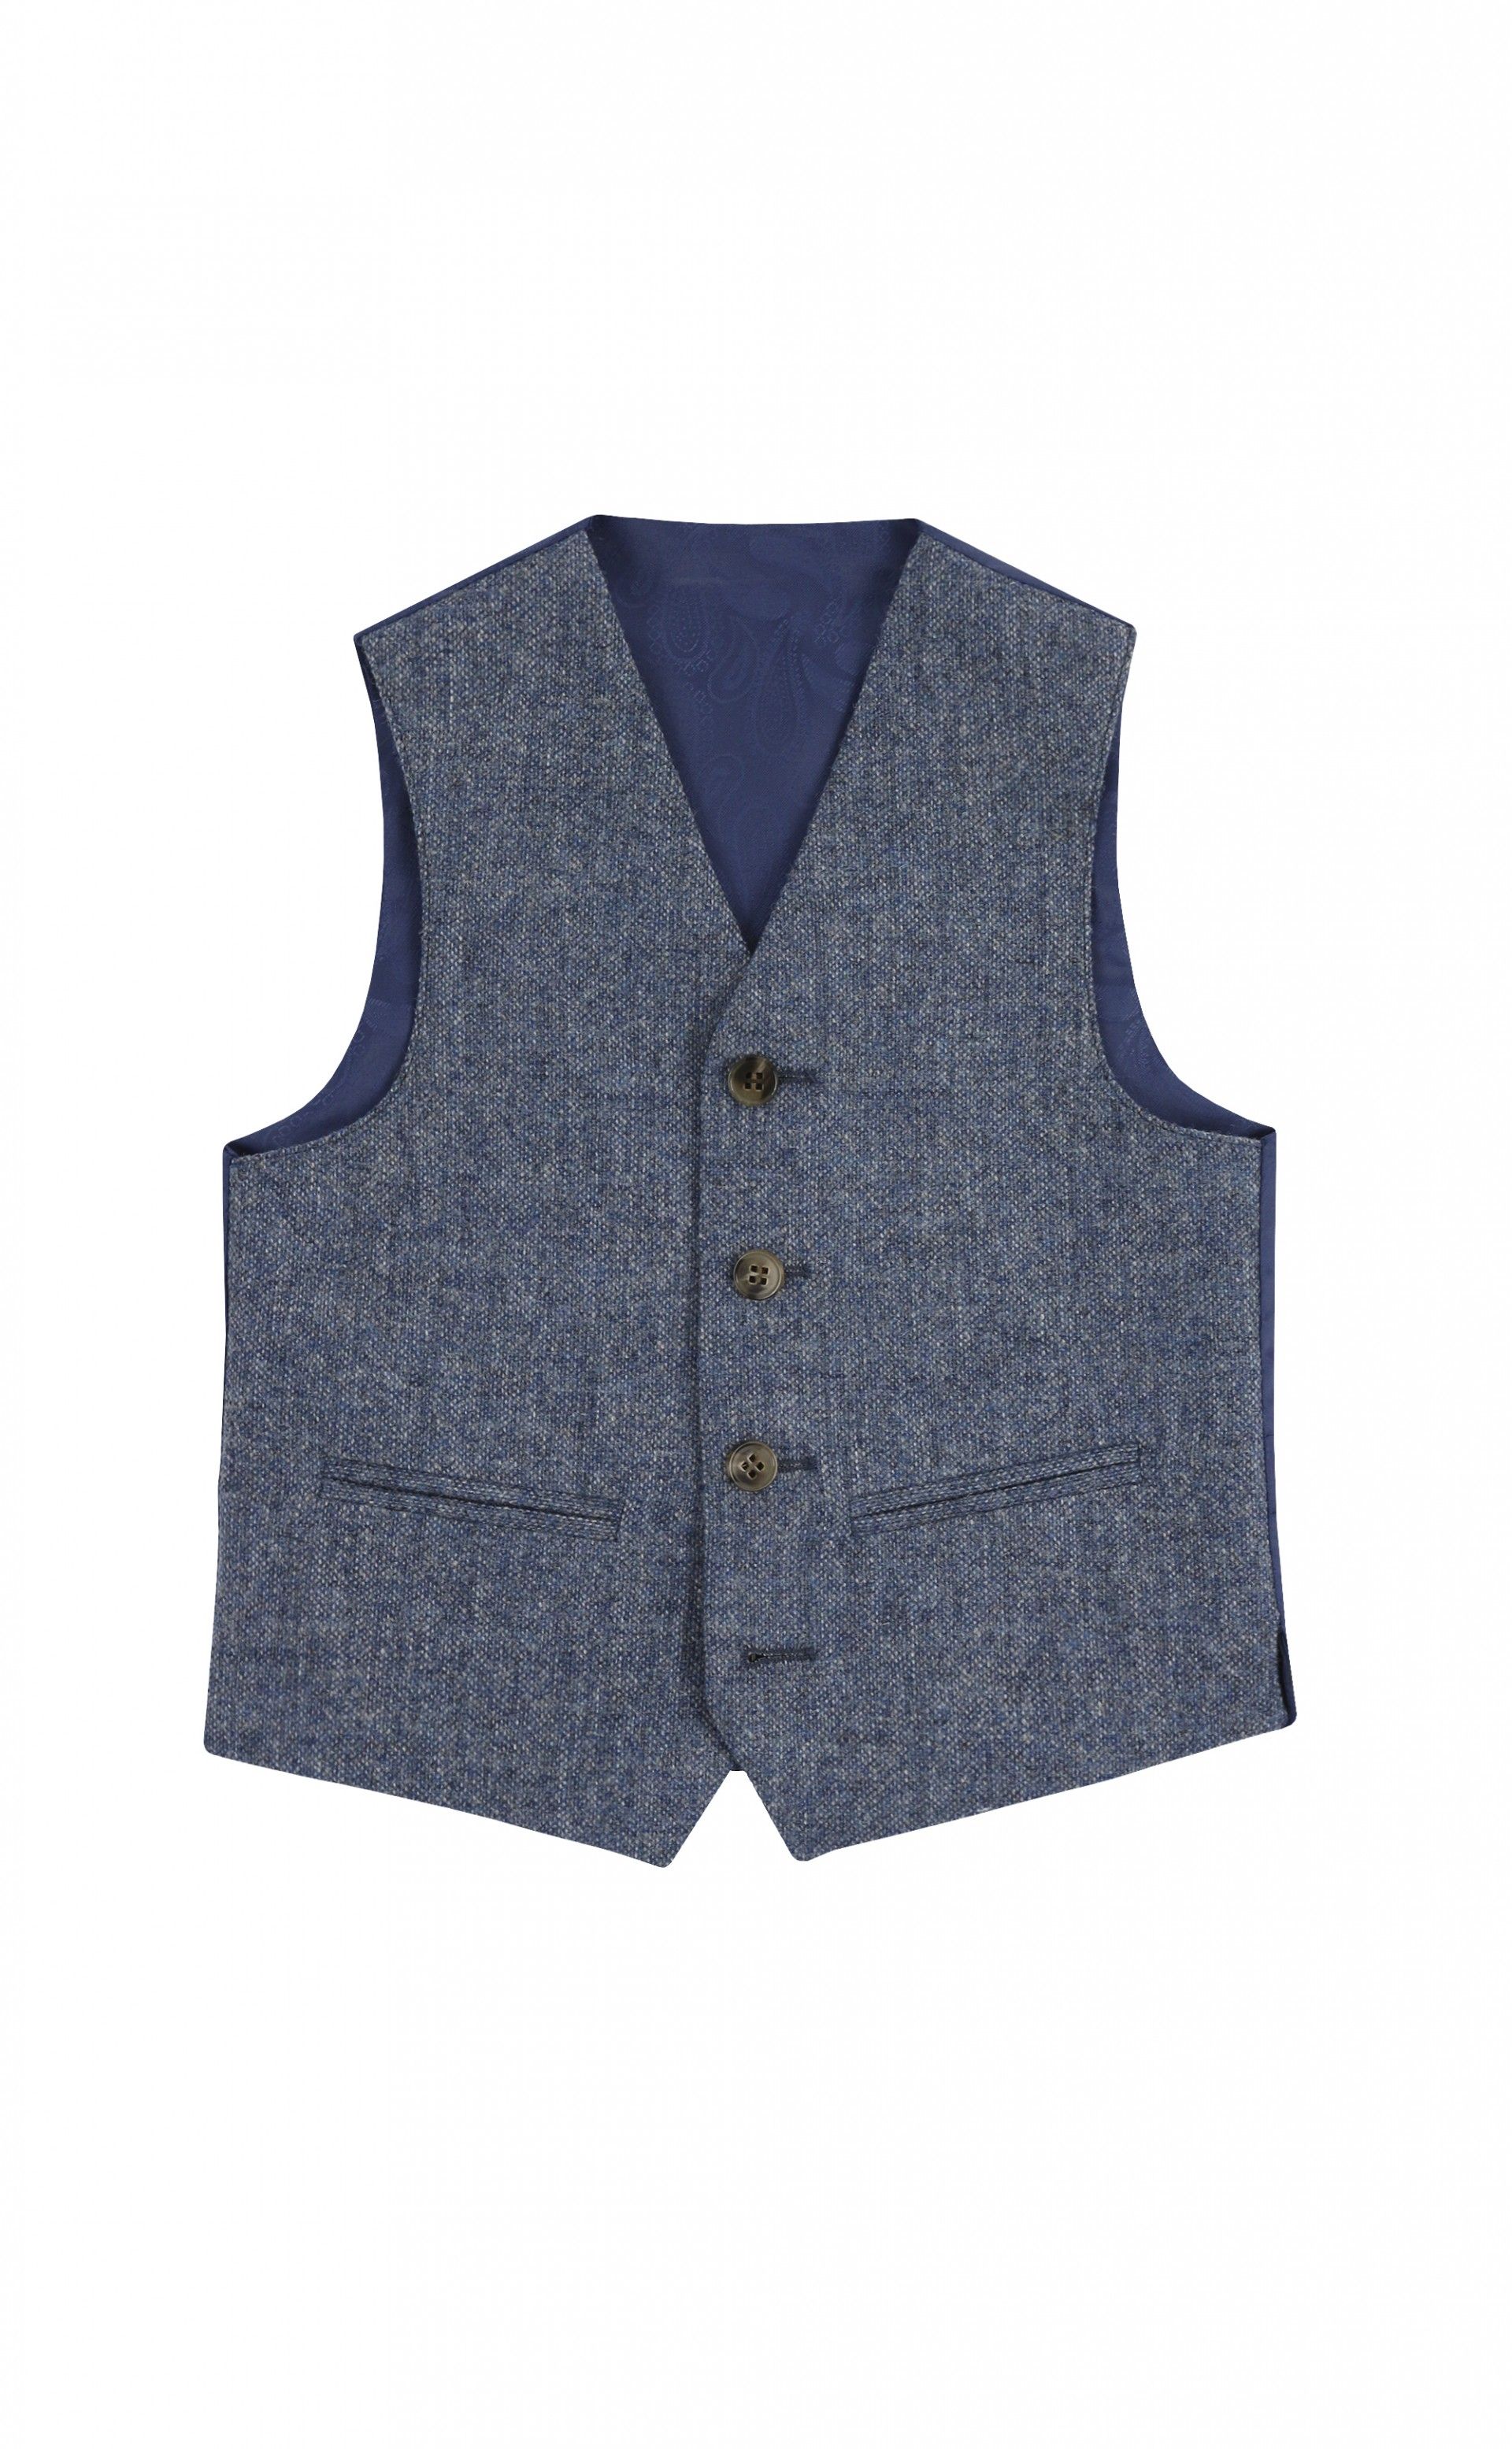 plain brocton blue wool tweed junior waistcoat | Torre Uomo ...